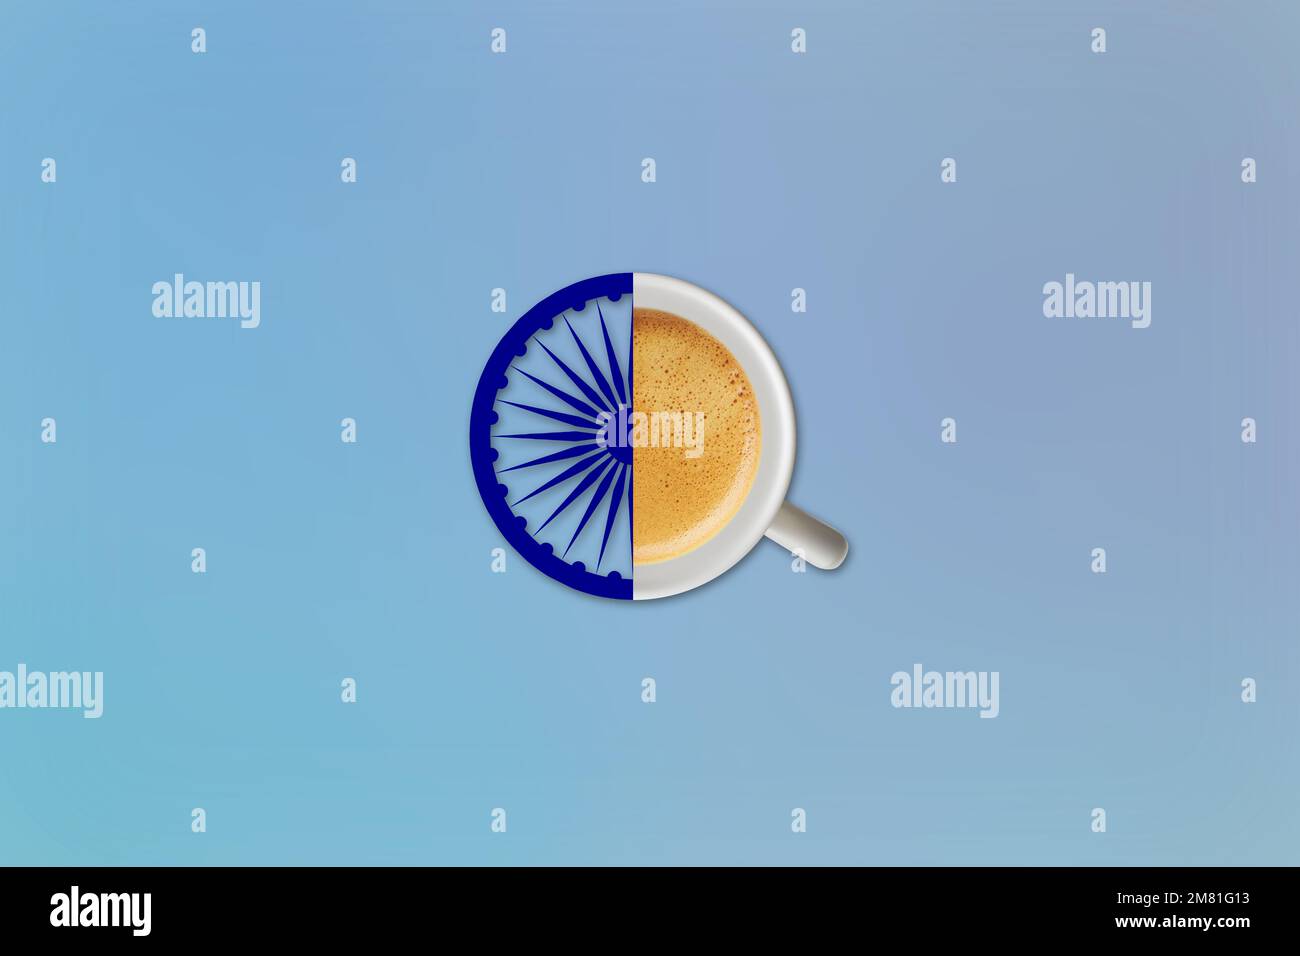 Ashok Chakra und Kaffeetasse Konzept und Design der indischen Flaggen Kunst. Der Tag der Republik Indien. Unabhängigkeitstag Indiens. Stockfoto